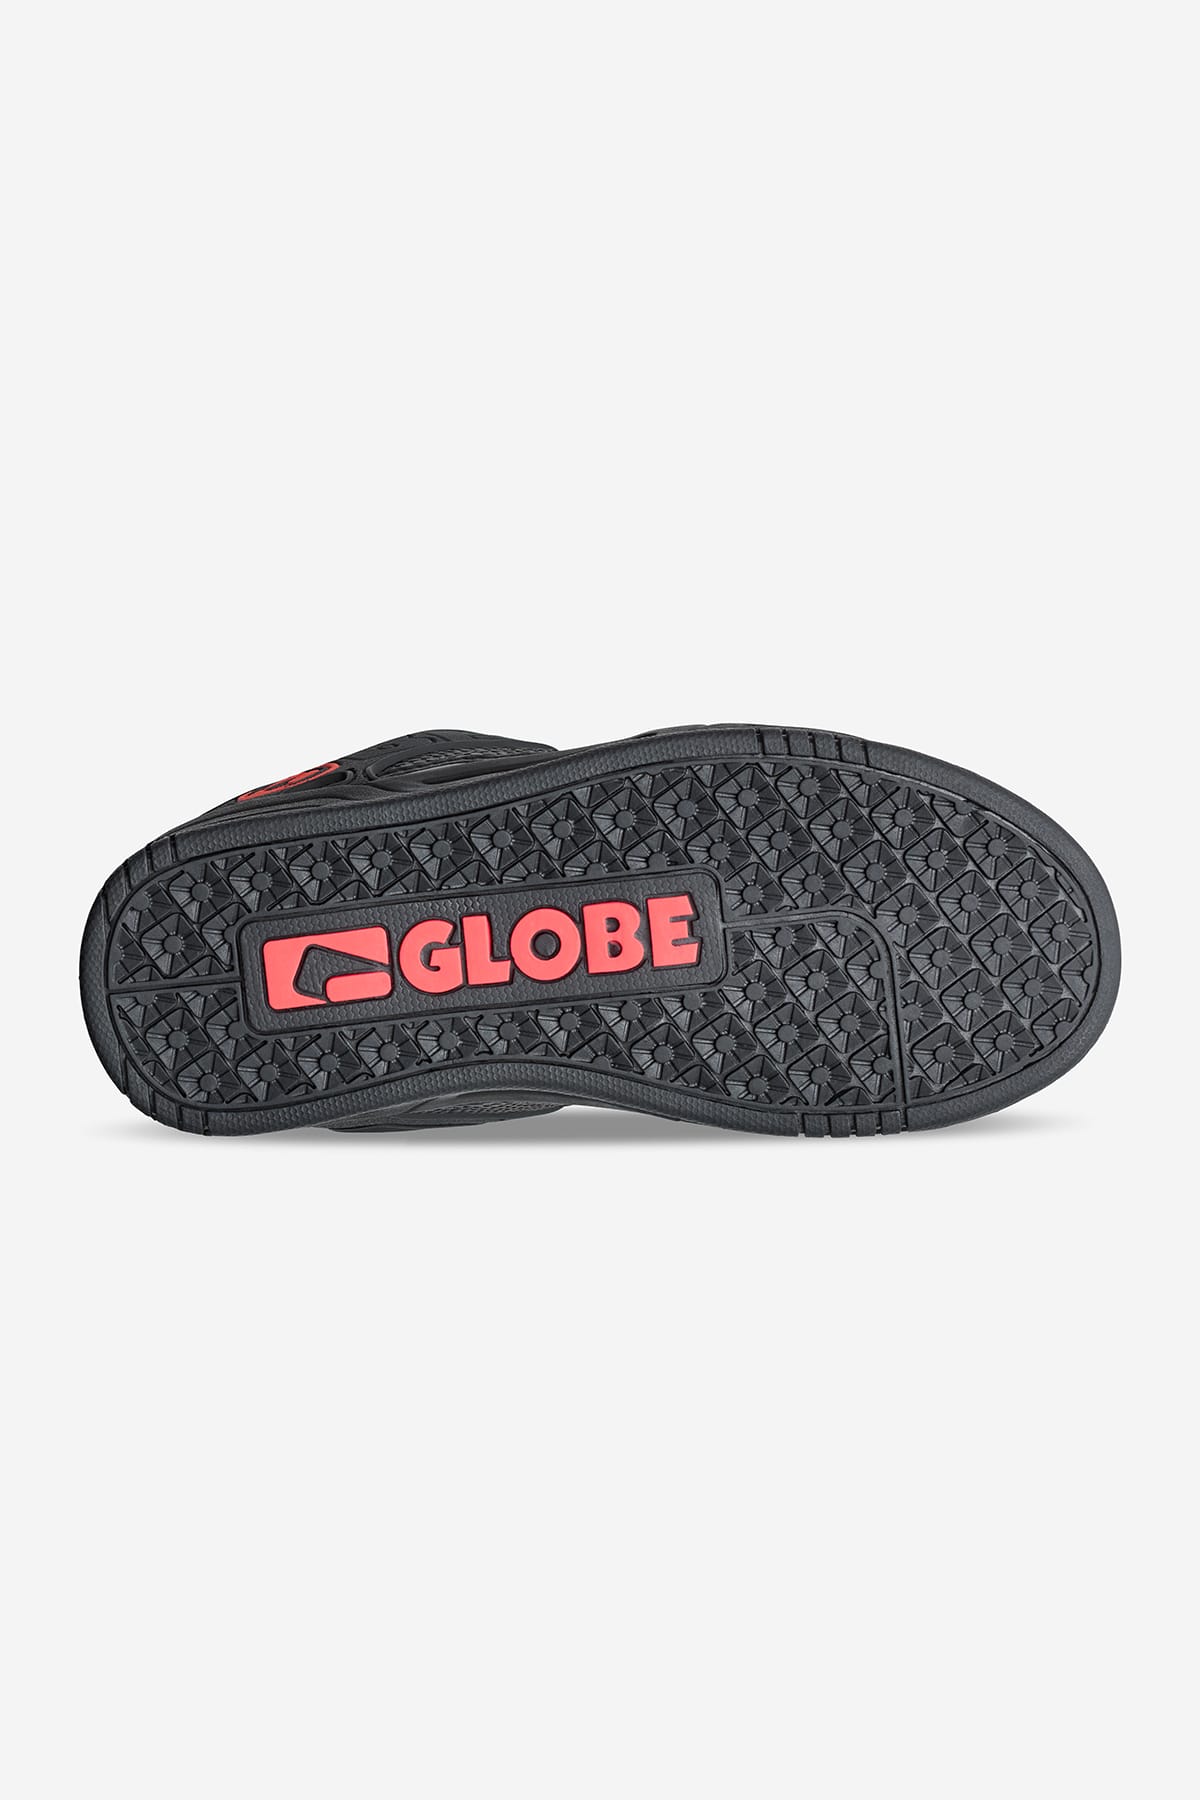 Globe - Tilt Kinderen - Zwart/Snake - skateboard Schoenen